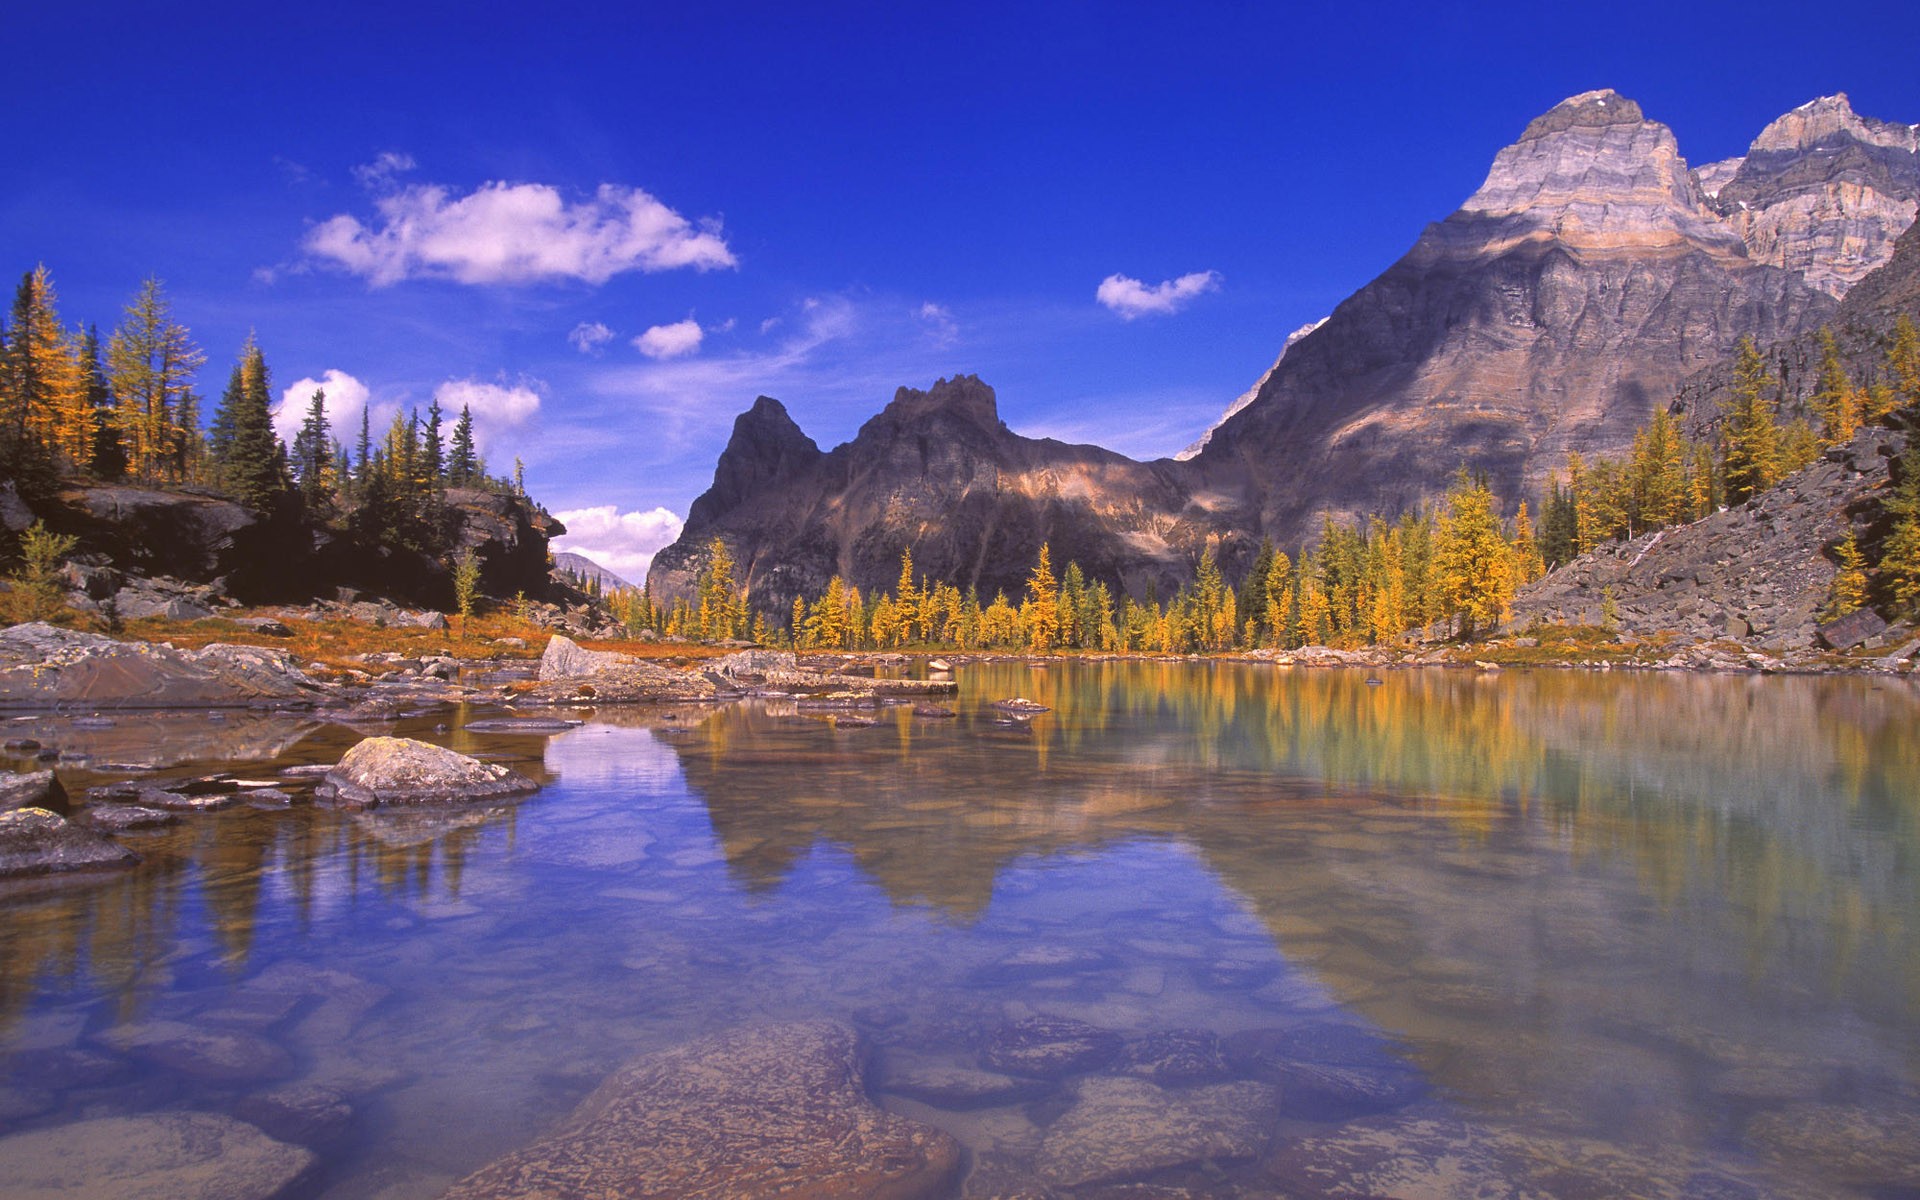 landscapes, nature, autumn - desktop wallpaper